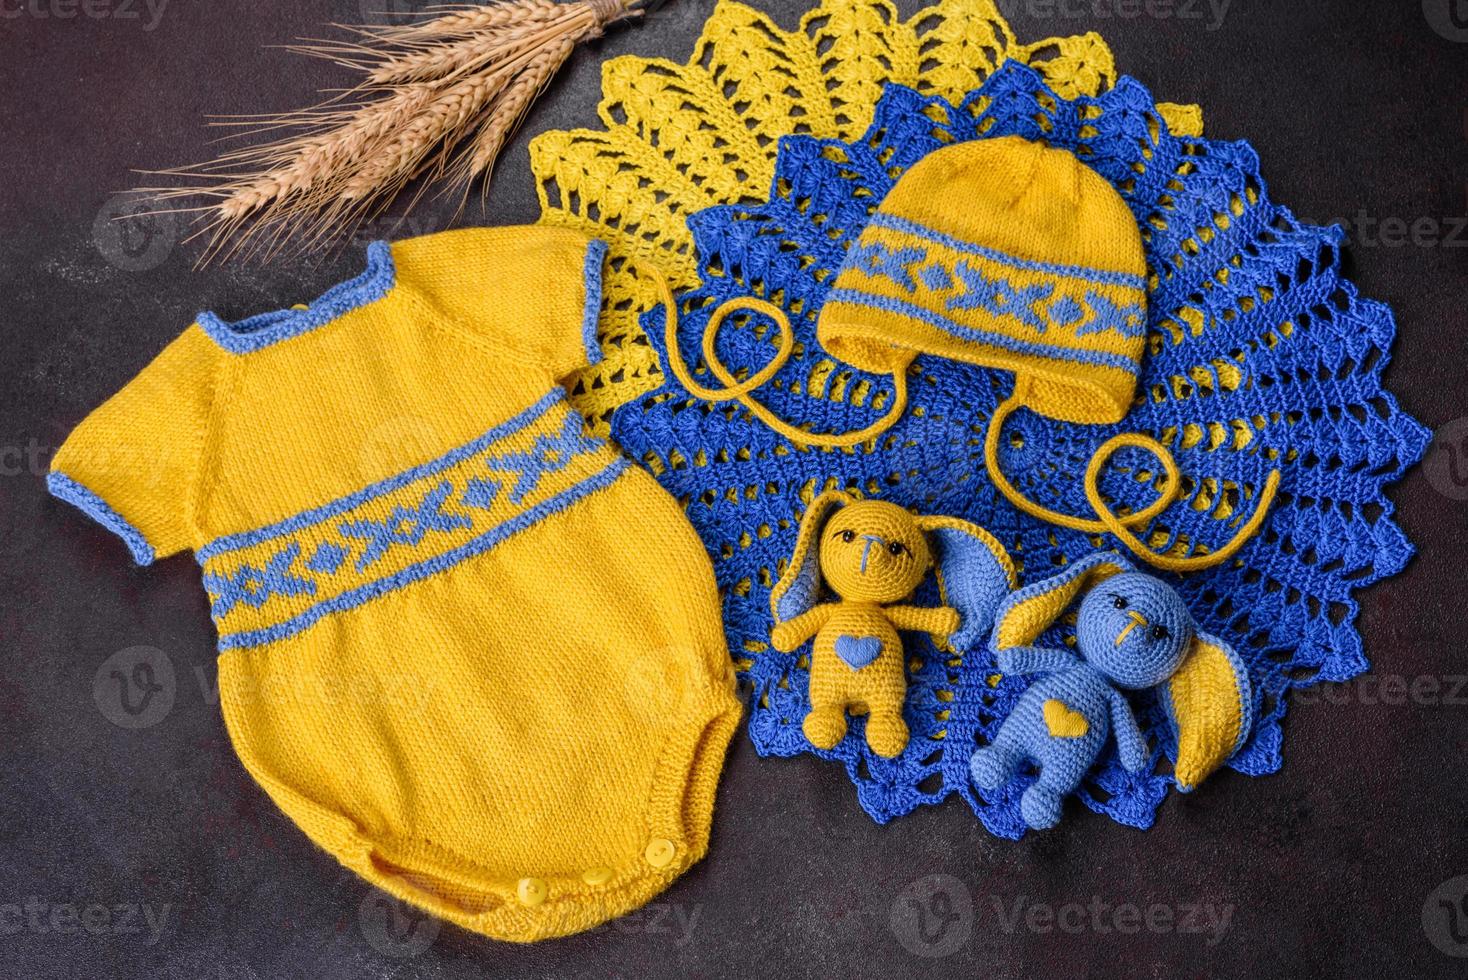 alcune cose legate da corde con le tue mani nei colori della bandiera dell'ucraina foto